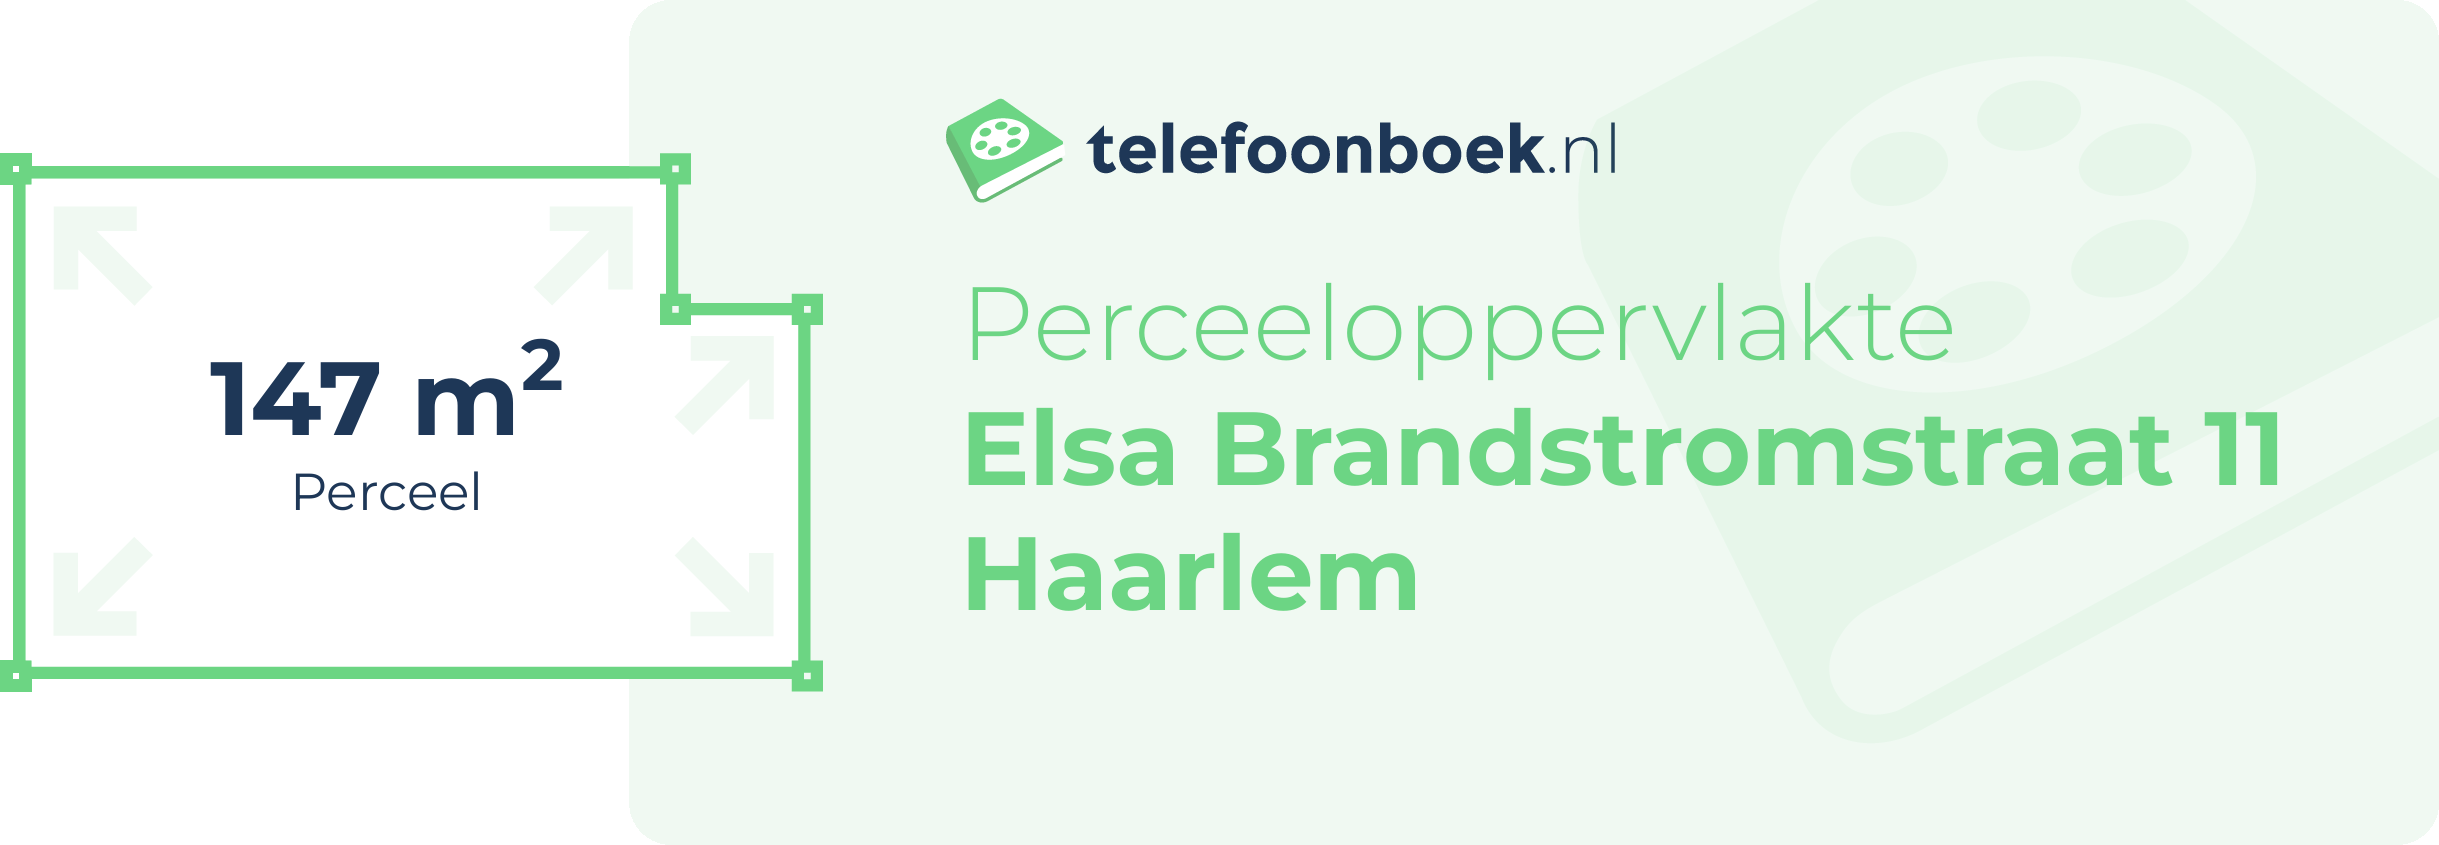 Perceeloppervlakte Elsa Brandstromstraat 11 Haarlem